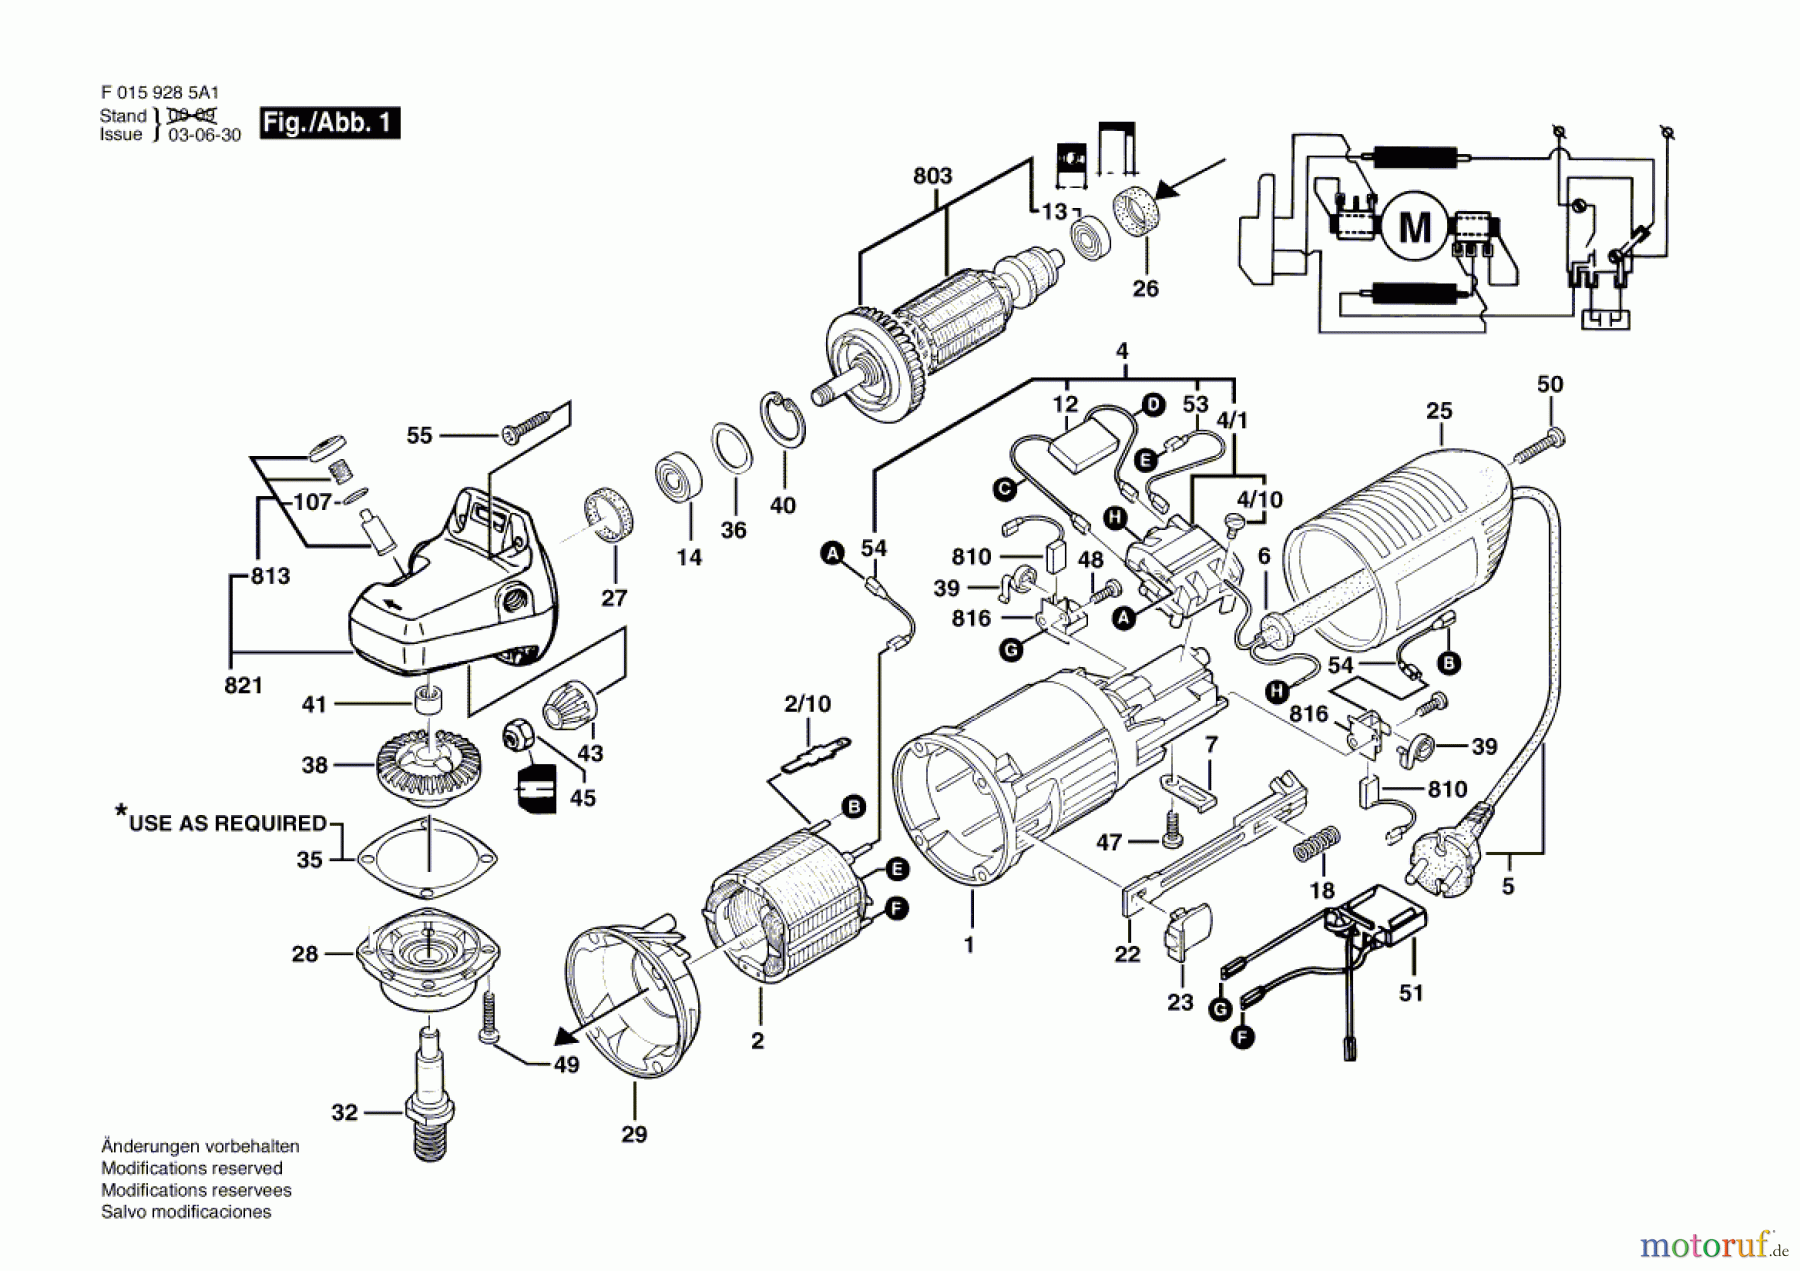  Bosch Werkzeug Winkelschleifer 9280 Seite 1